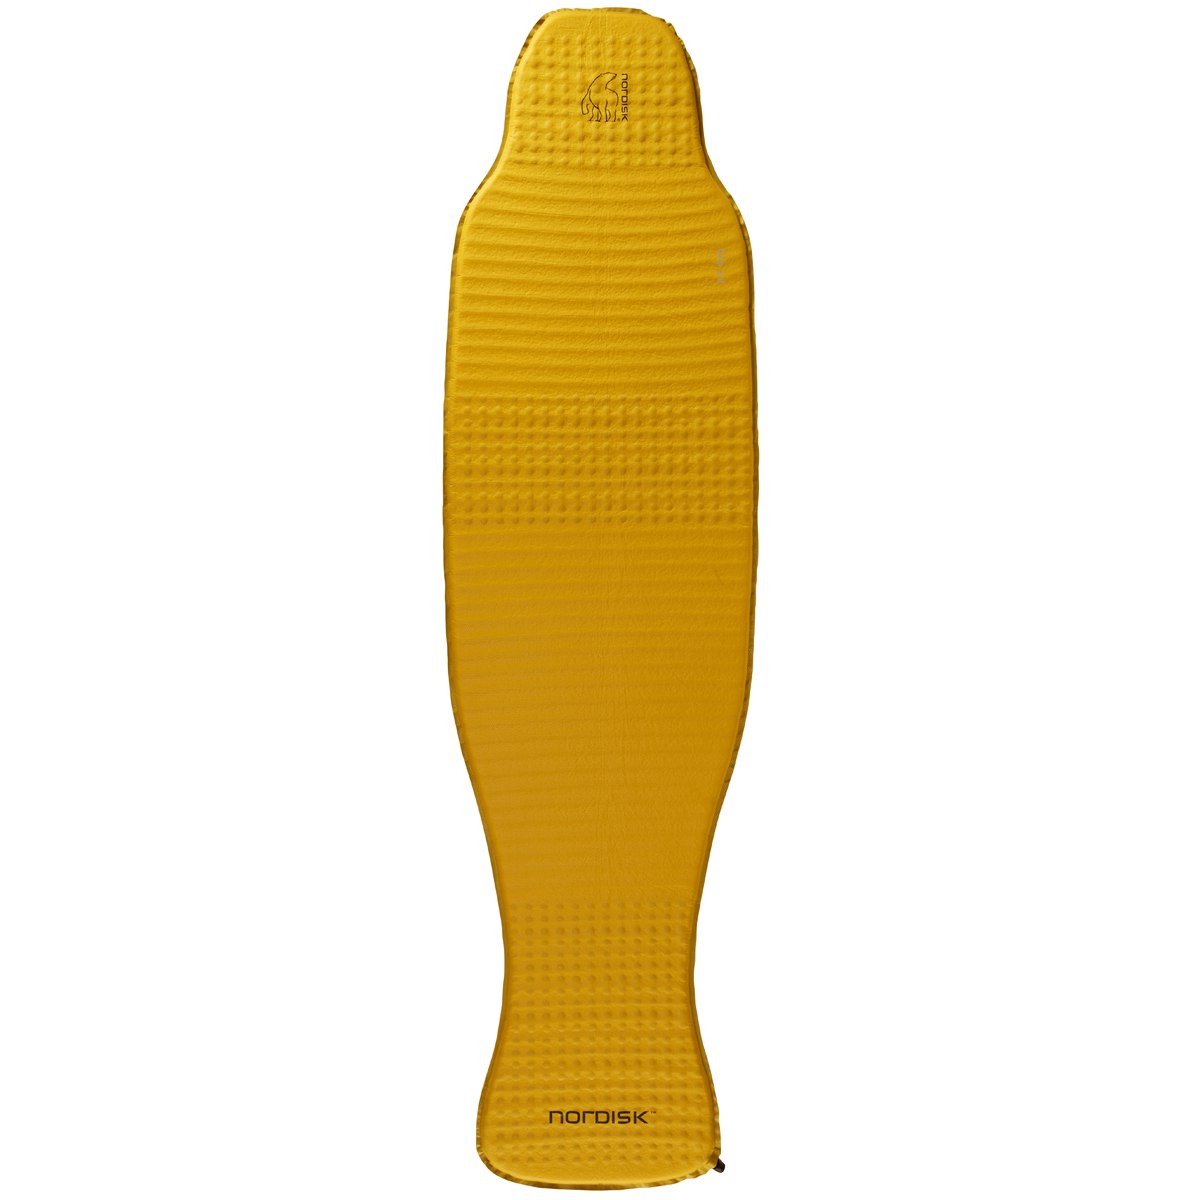 Bild von Nordisk Grip 3.8 Large Isomatte - Mustard Yellow/Black